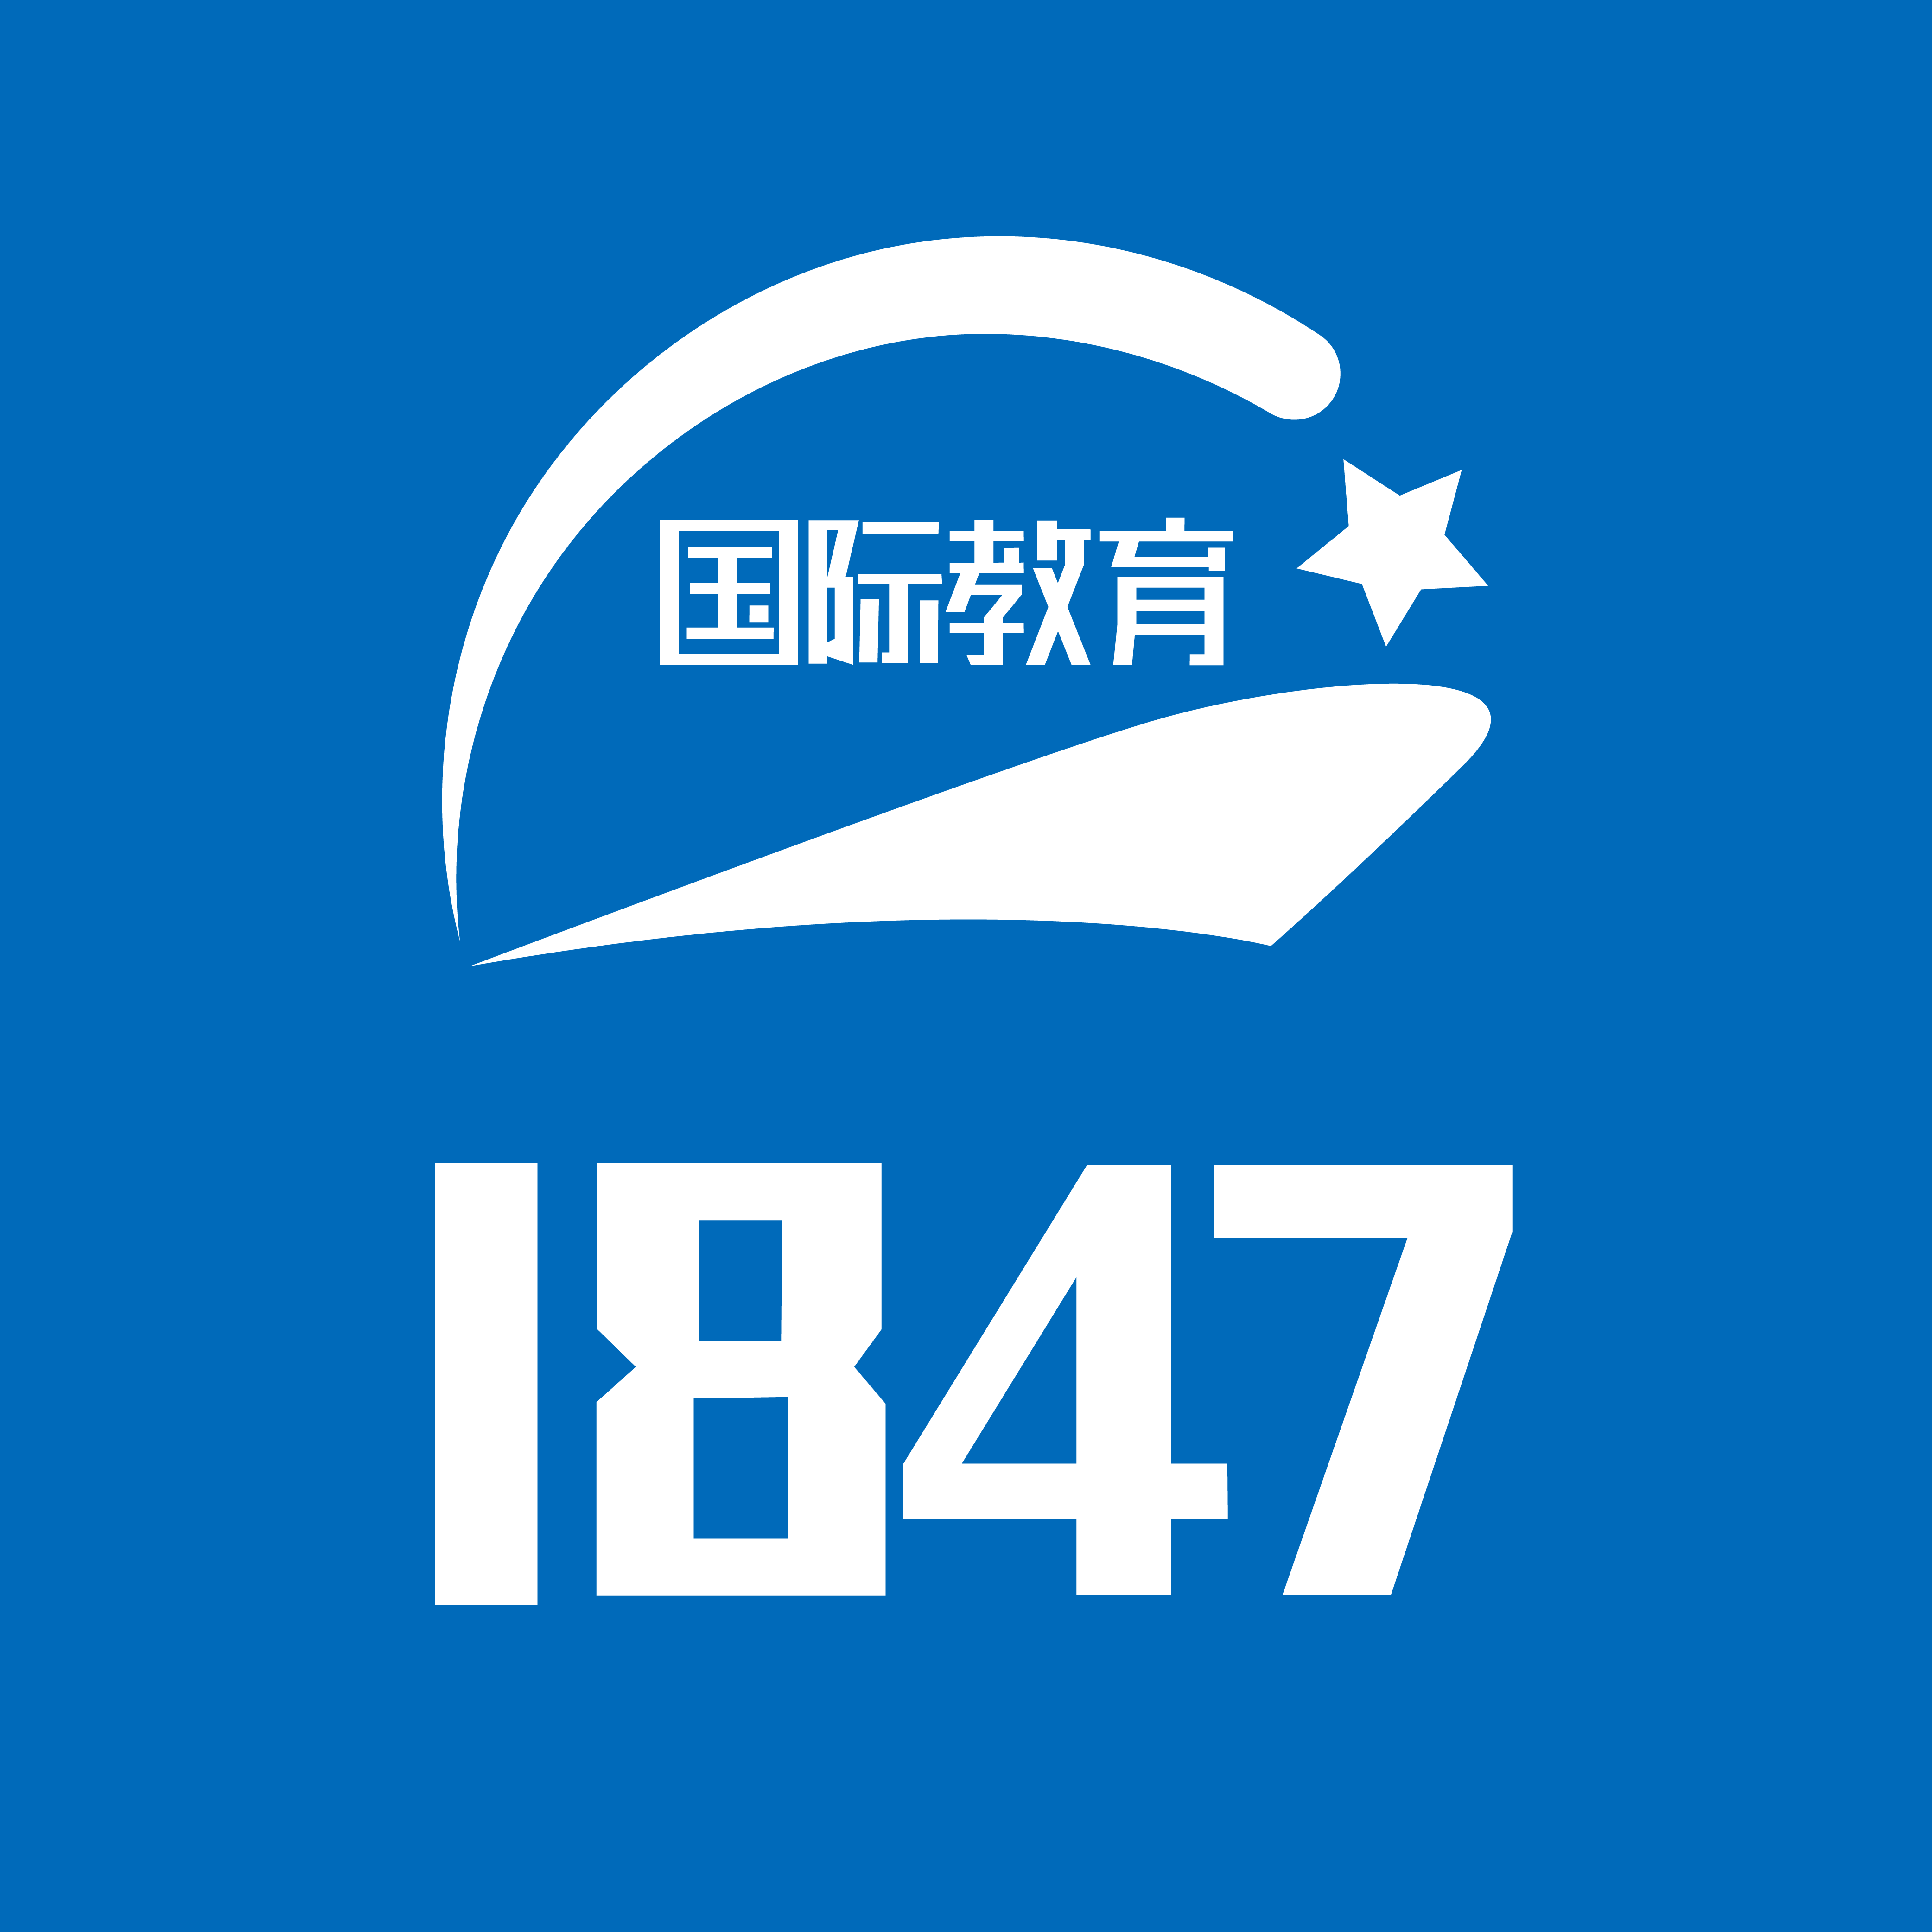 【1847國際教育】一(yī)站式服務平台